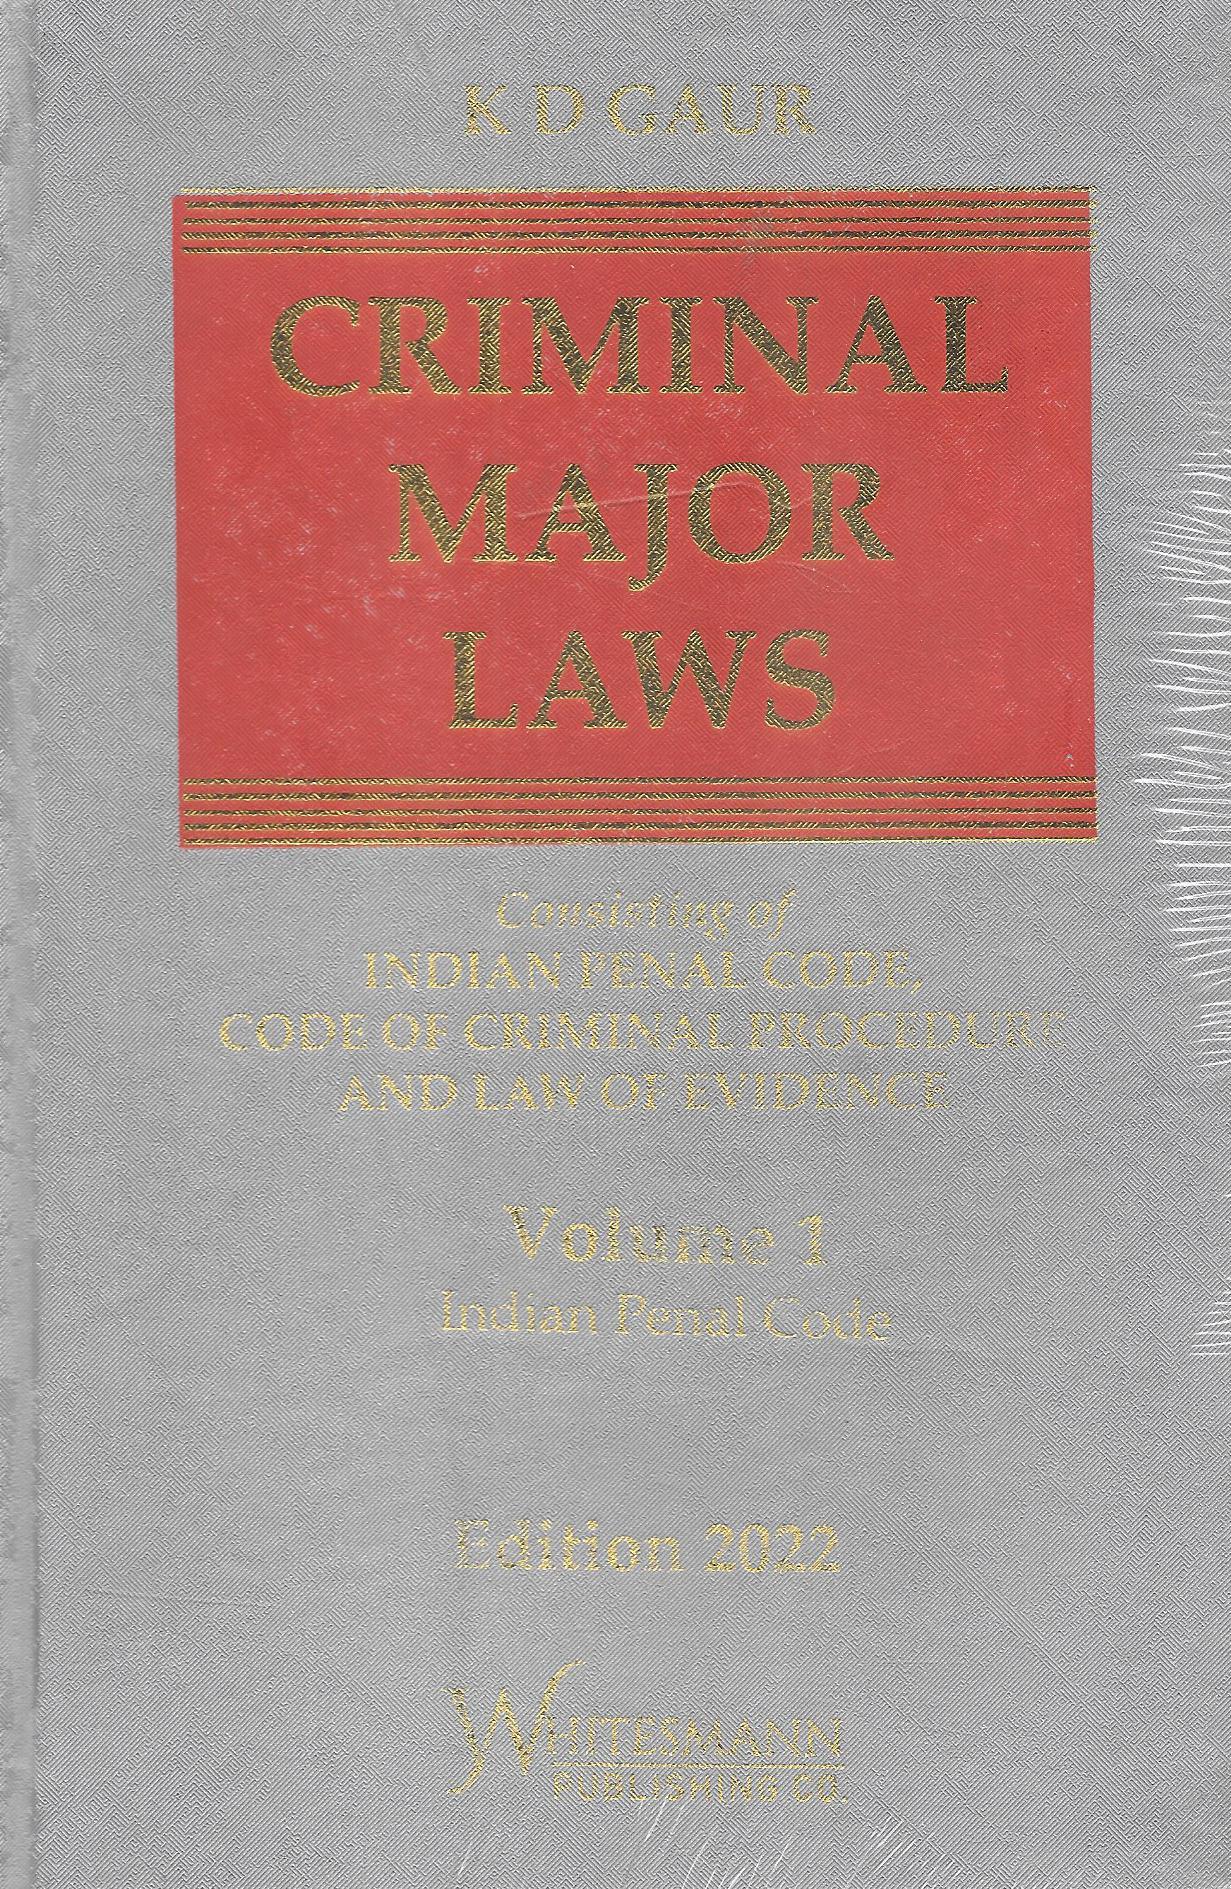 Criminal Major Laws (In 2 Vol.)